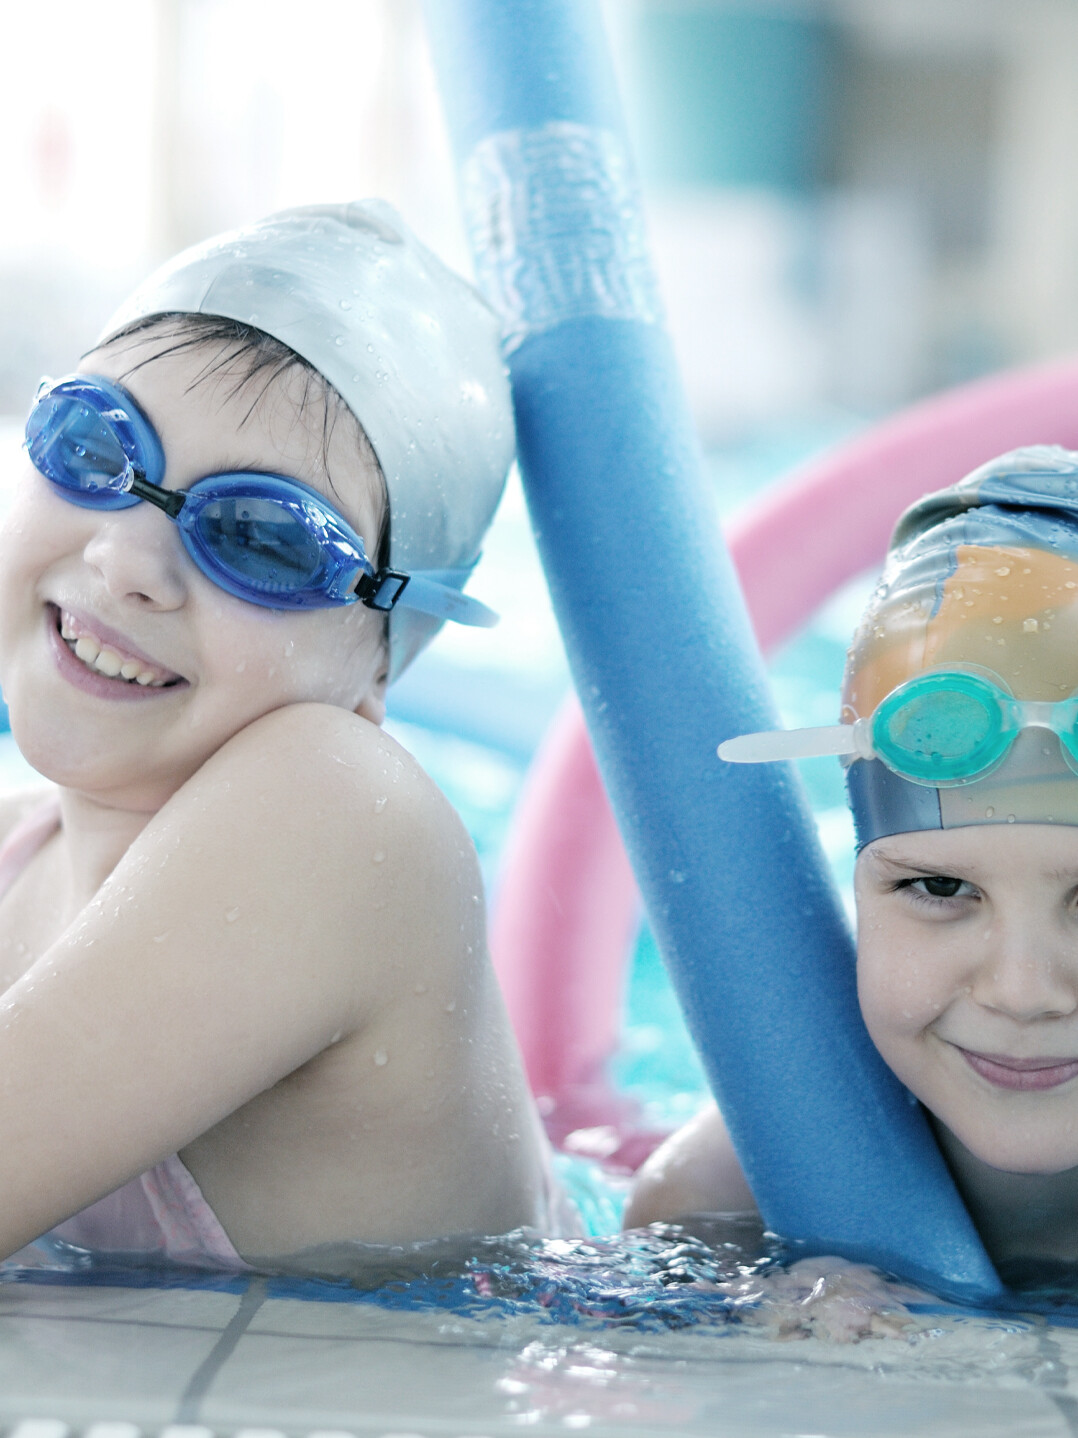 Nuoto baby è un corso di ambientamento in acqua per bambini progettato per introdurre i bambini piccoli all’acqua in modo sicuro e divertente